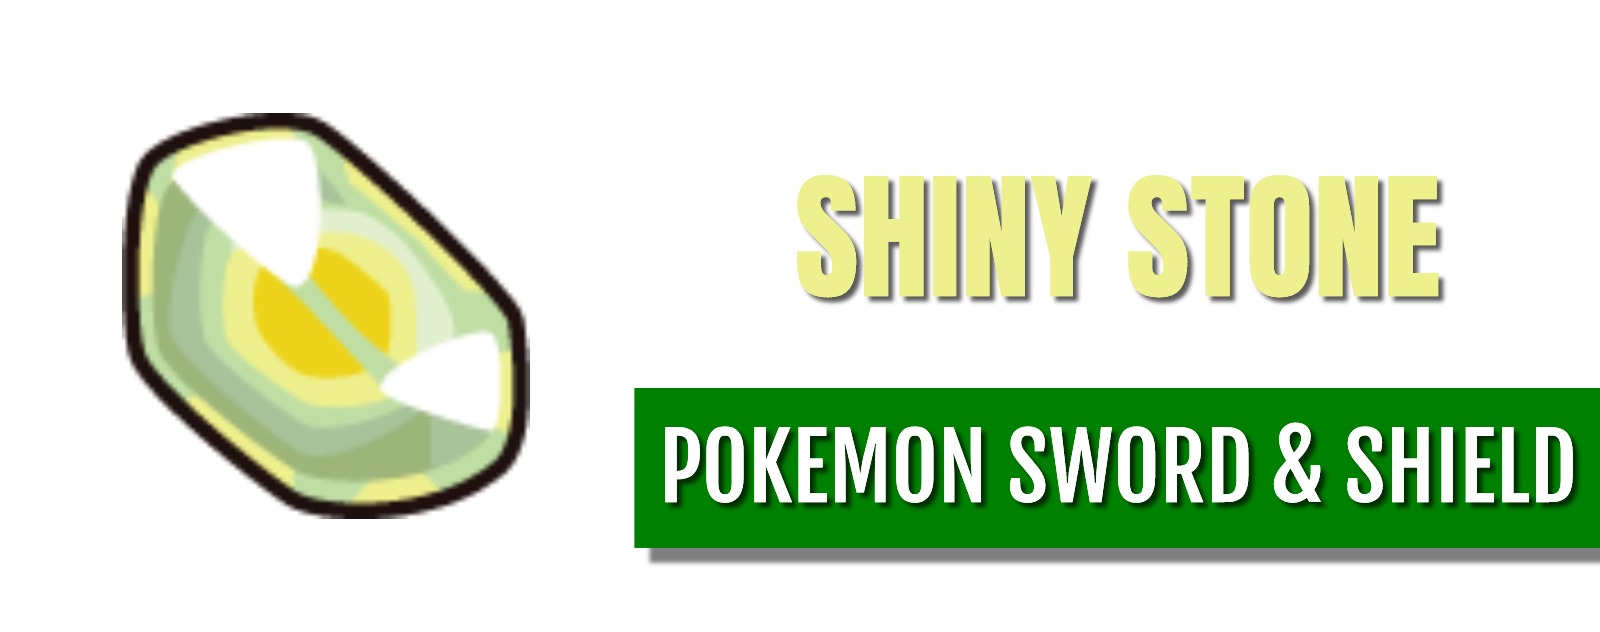 shiny stone pokemon sword and shield